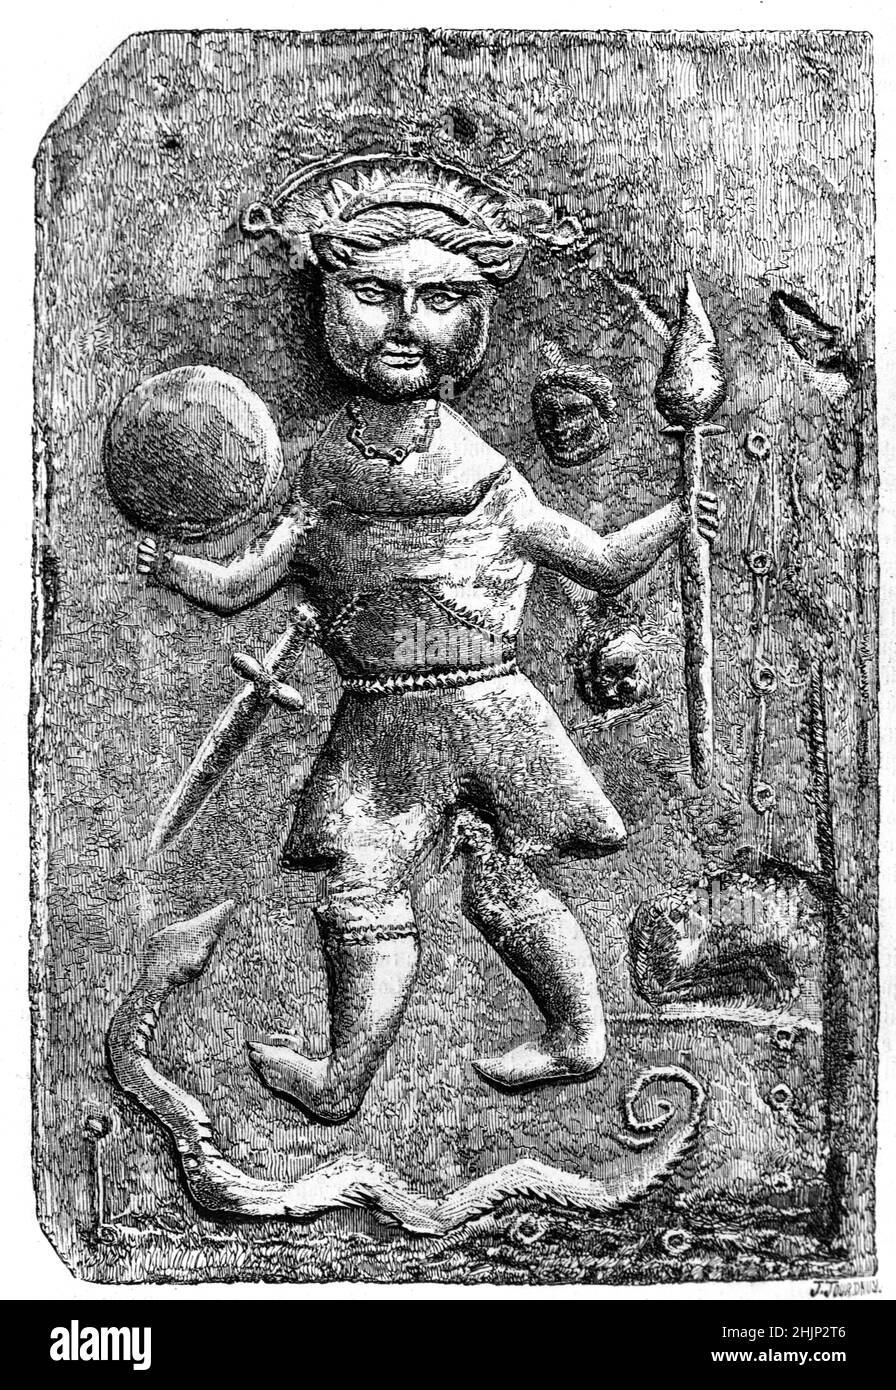 Antico bassorilievo di pietra che mostra una strana figura che è stata variamente interpretata come un Dio pagano, possibilmente Tyllinus, un'impressione rurale provinciale di Cristo, un'antica Gallia, un soldato gallico o guerriero che porta una voce, un pugnale e possibilmente uno scudo, o un Cacciatore circondato da un serpente e teste separate. Realizzata in mattoni 42cmx27cm, datata tra il c3rd e 5th secoli d.C., la scultura è stata scoperta sulla linea di una strada romana vicino Issoire in Auvergne Francia. Illustrazione o incisione vintage 1865 Foto Stock